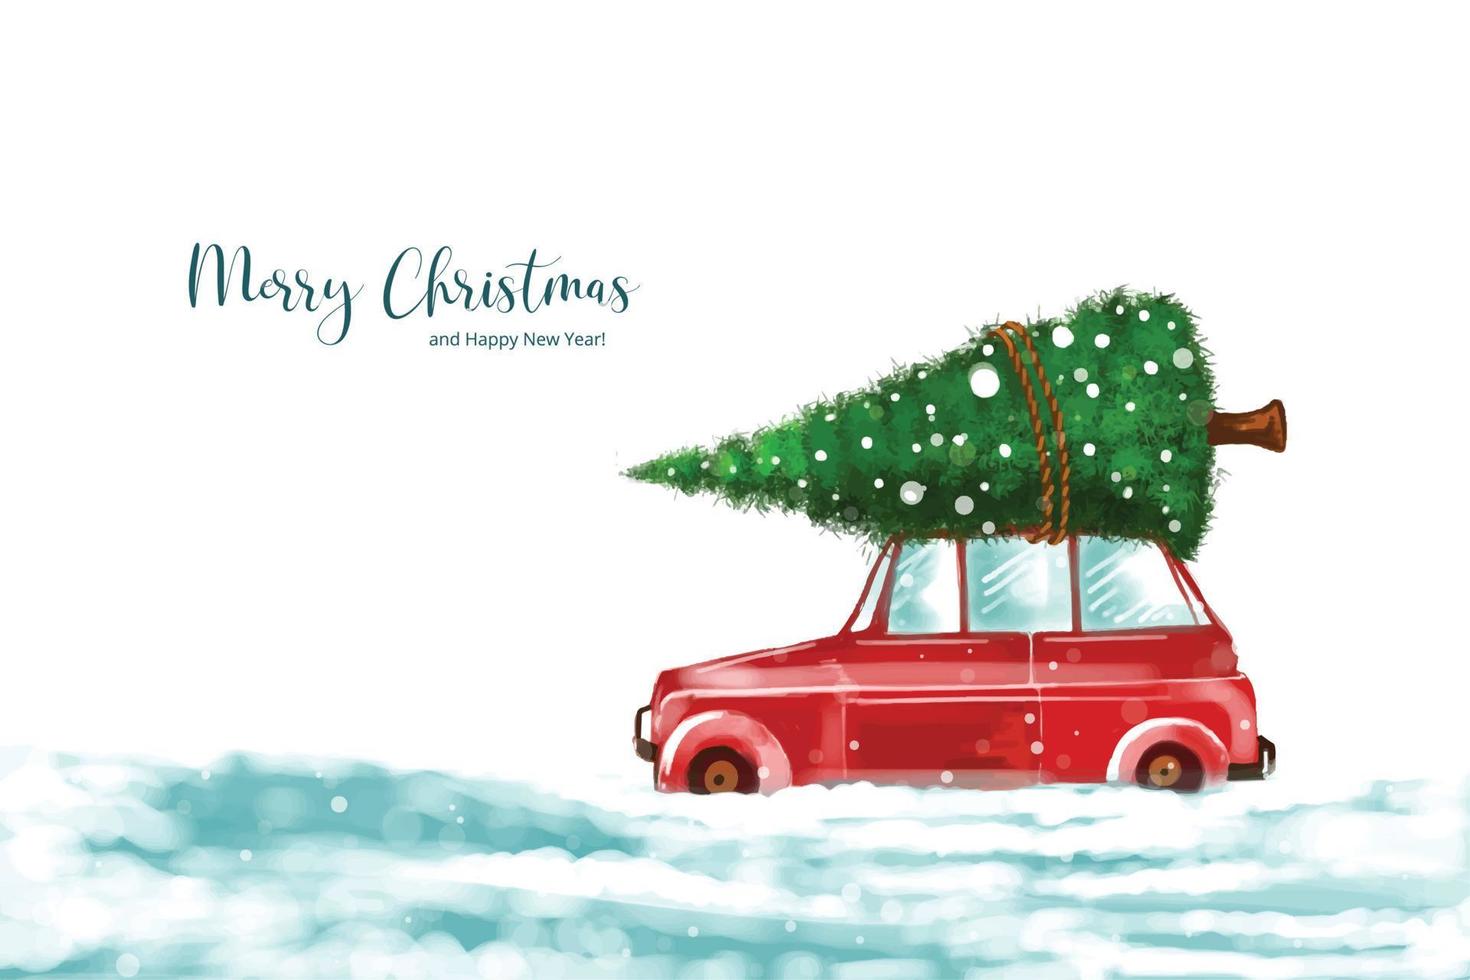 paisagem de inverno elegante com carro no fundo da árvore de natal nevado vetor